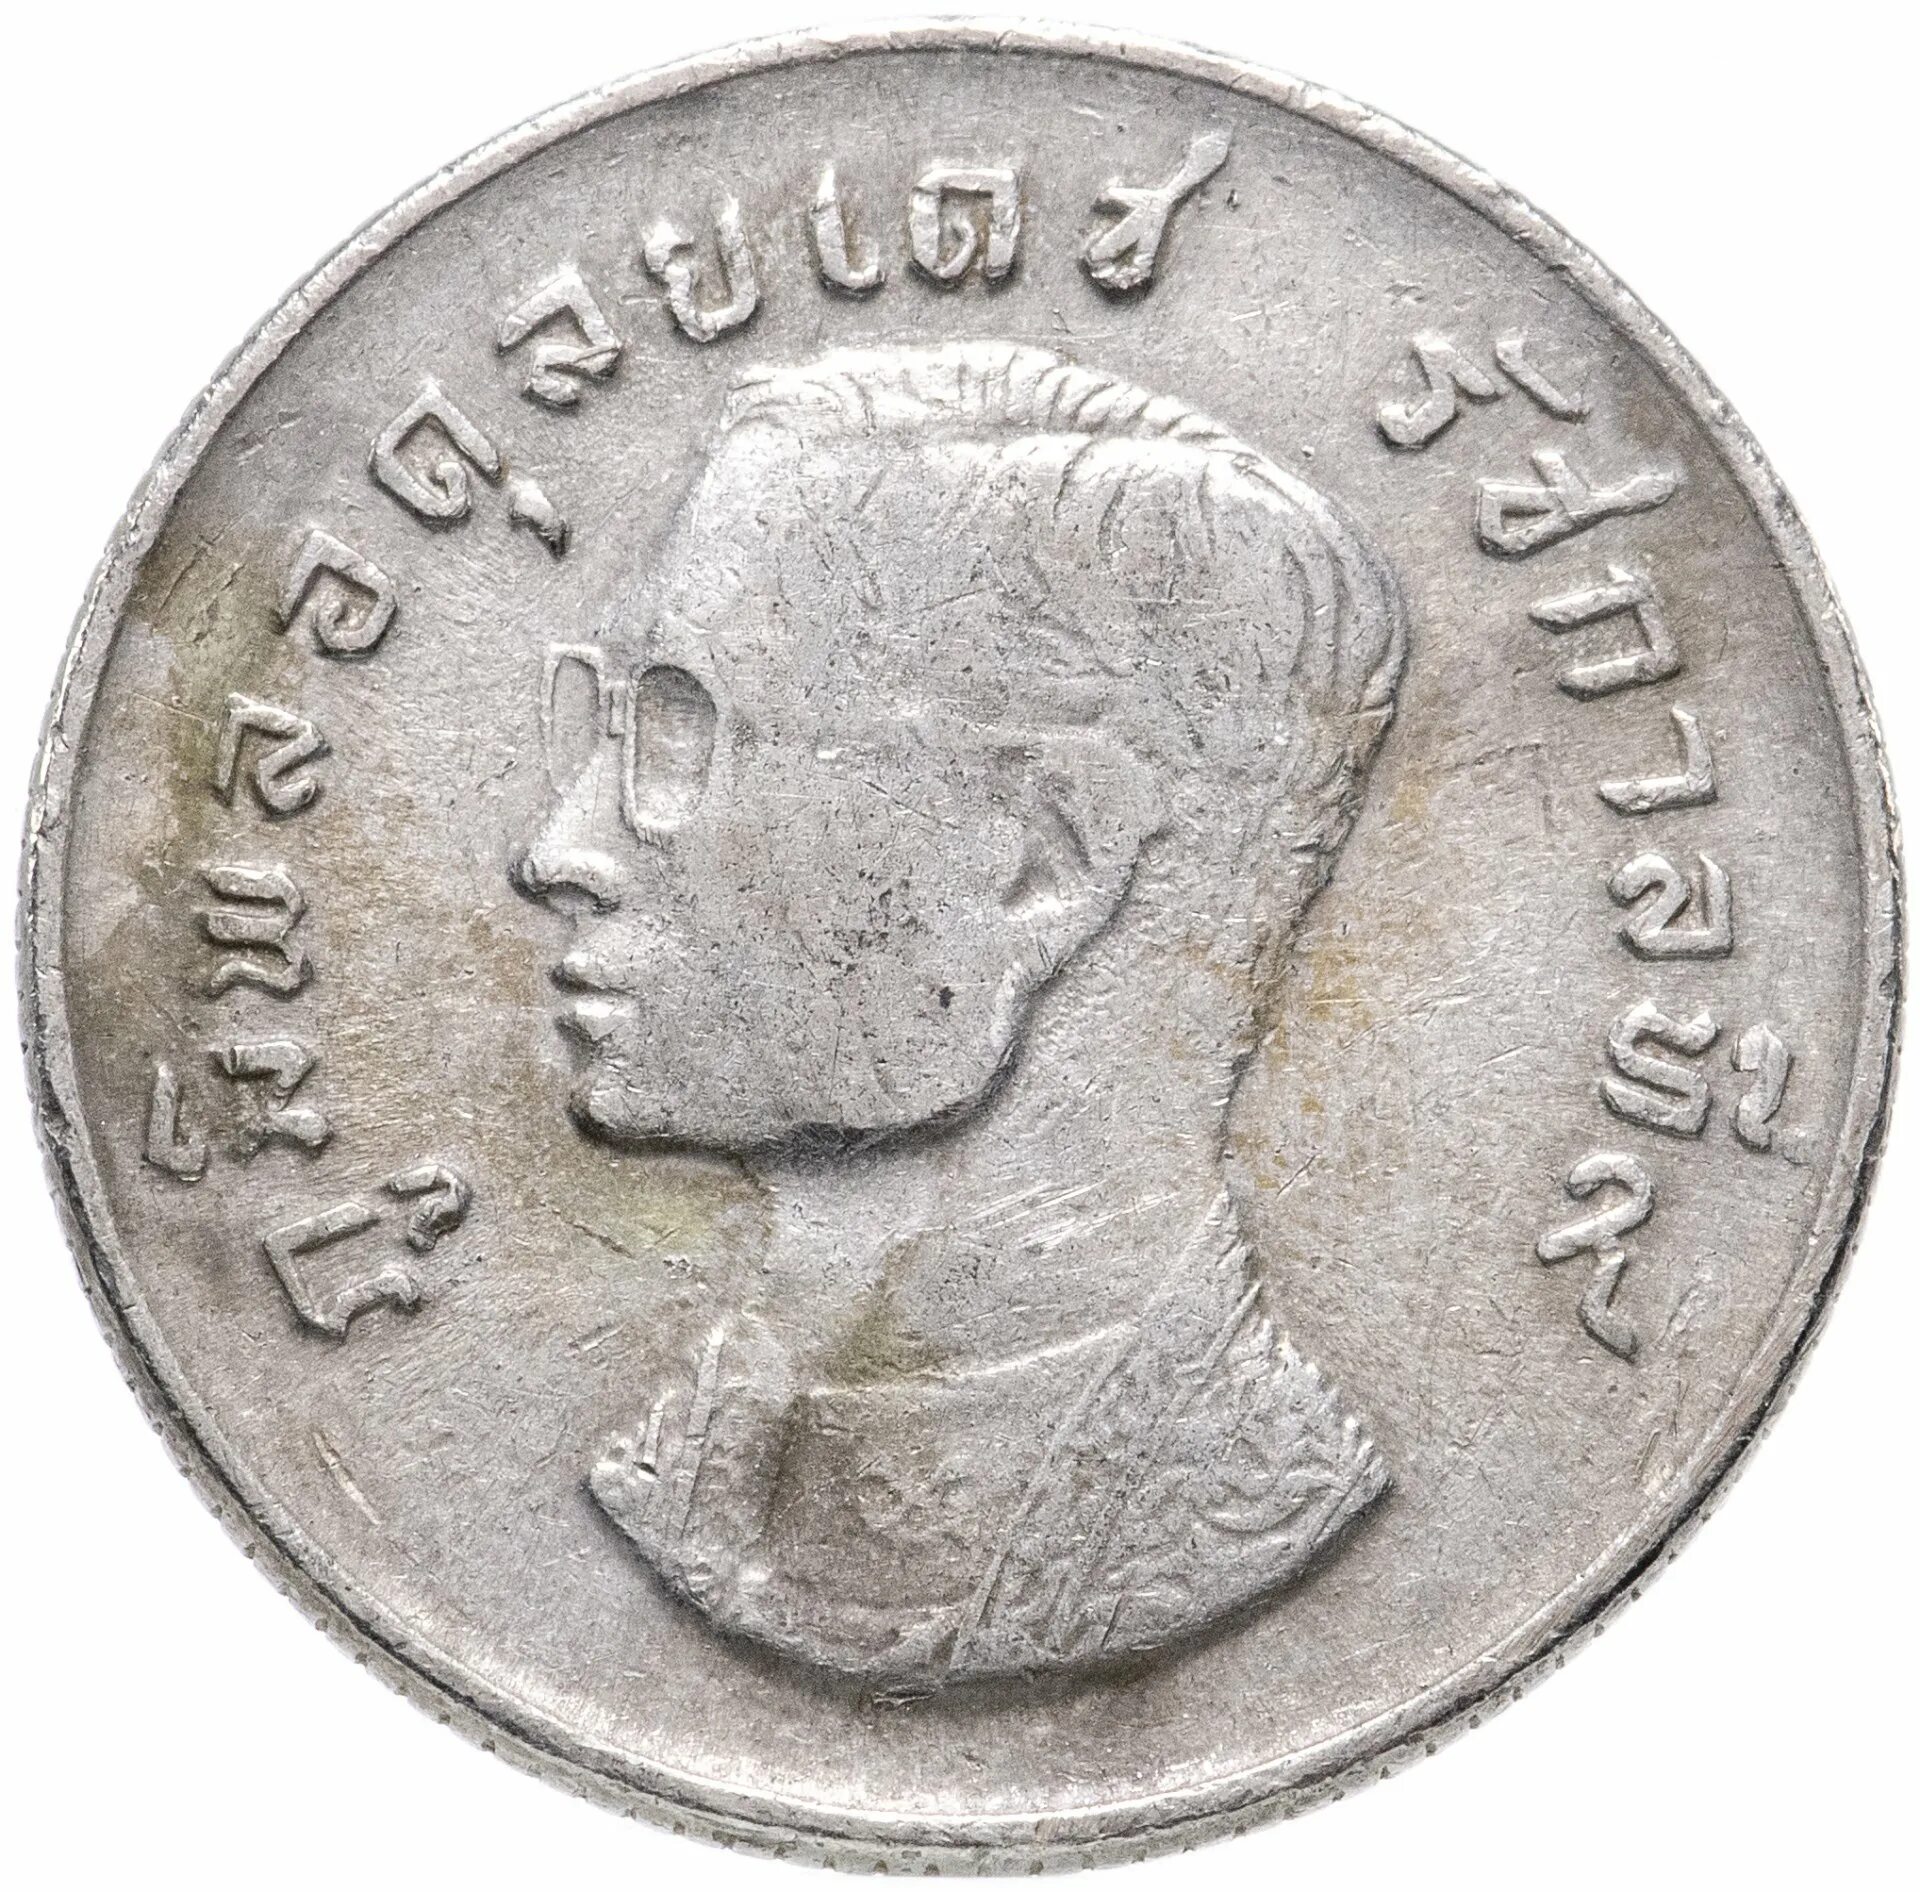 5 батов в рублях. Монета Тайланда 1 бат. Монеты Таиланда 1 бат 2020. 1 Бат 1858. 5 Бат монета.